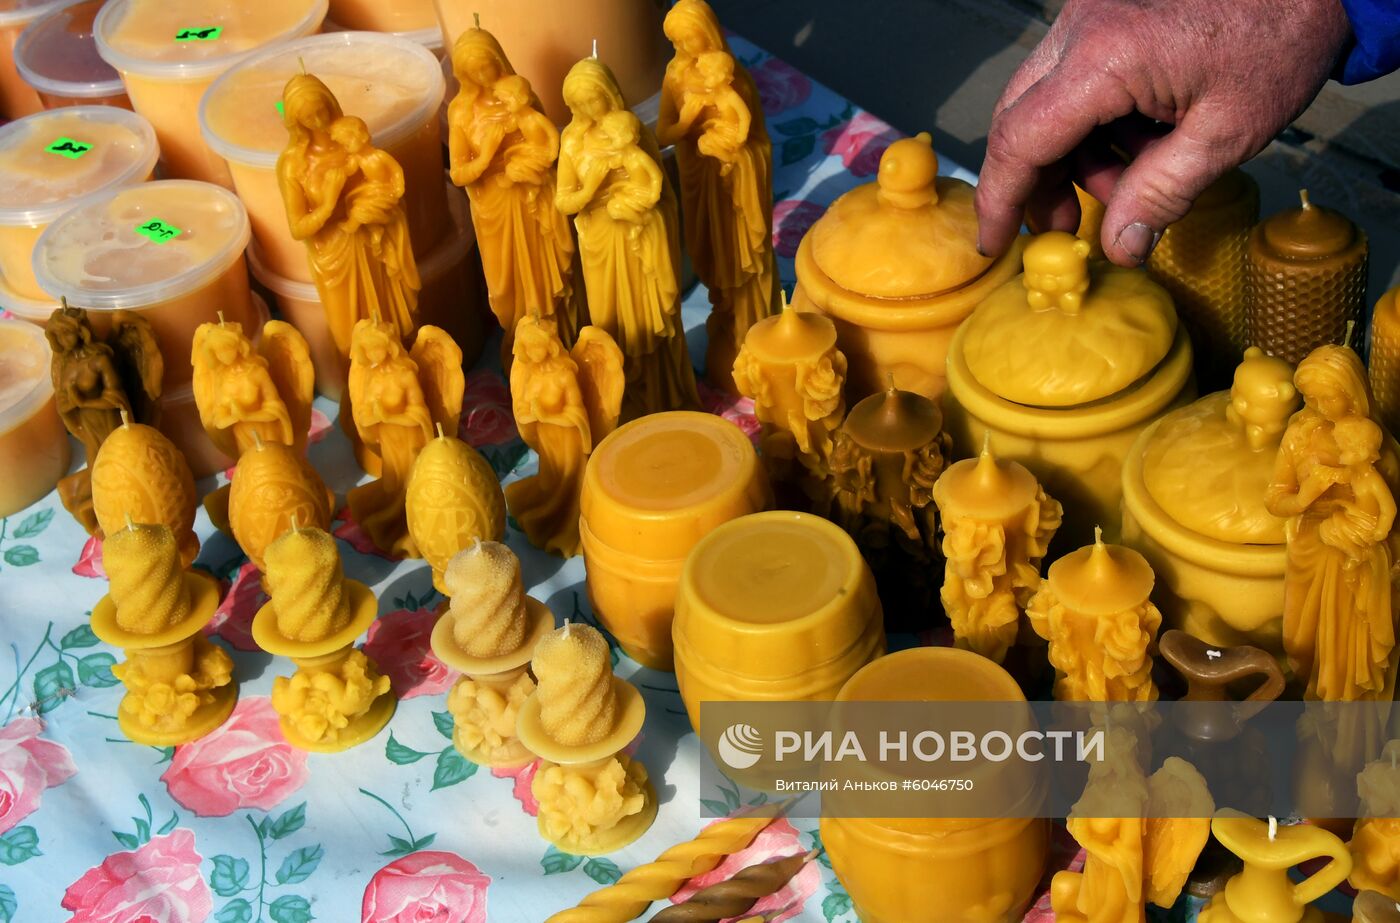 Продовольственная ярмарка во Владивостоке 